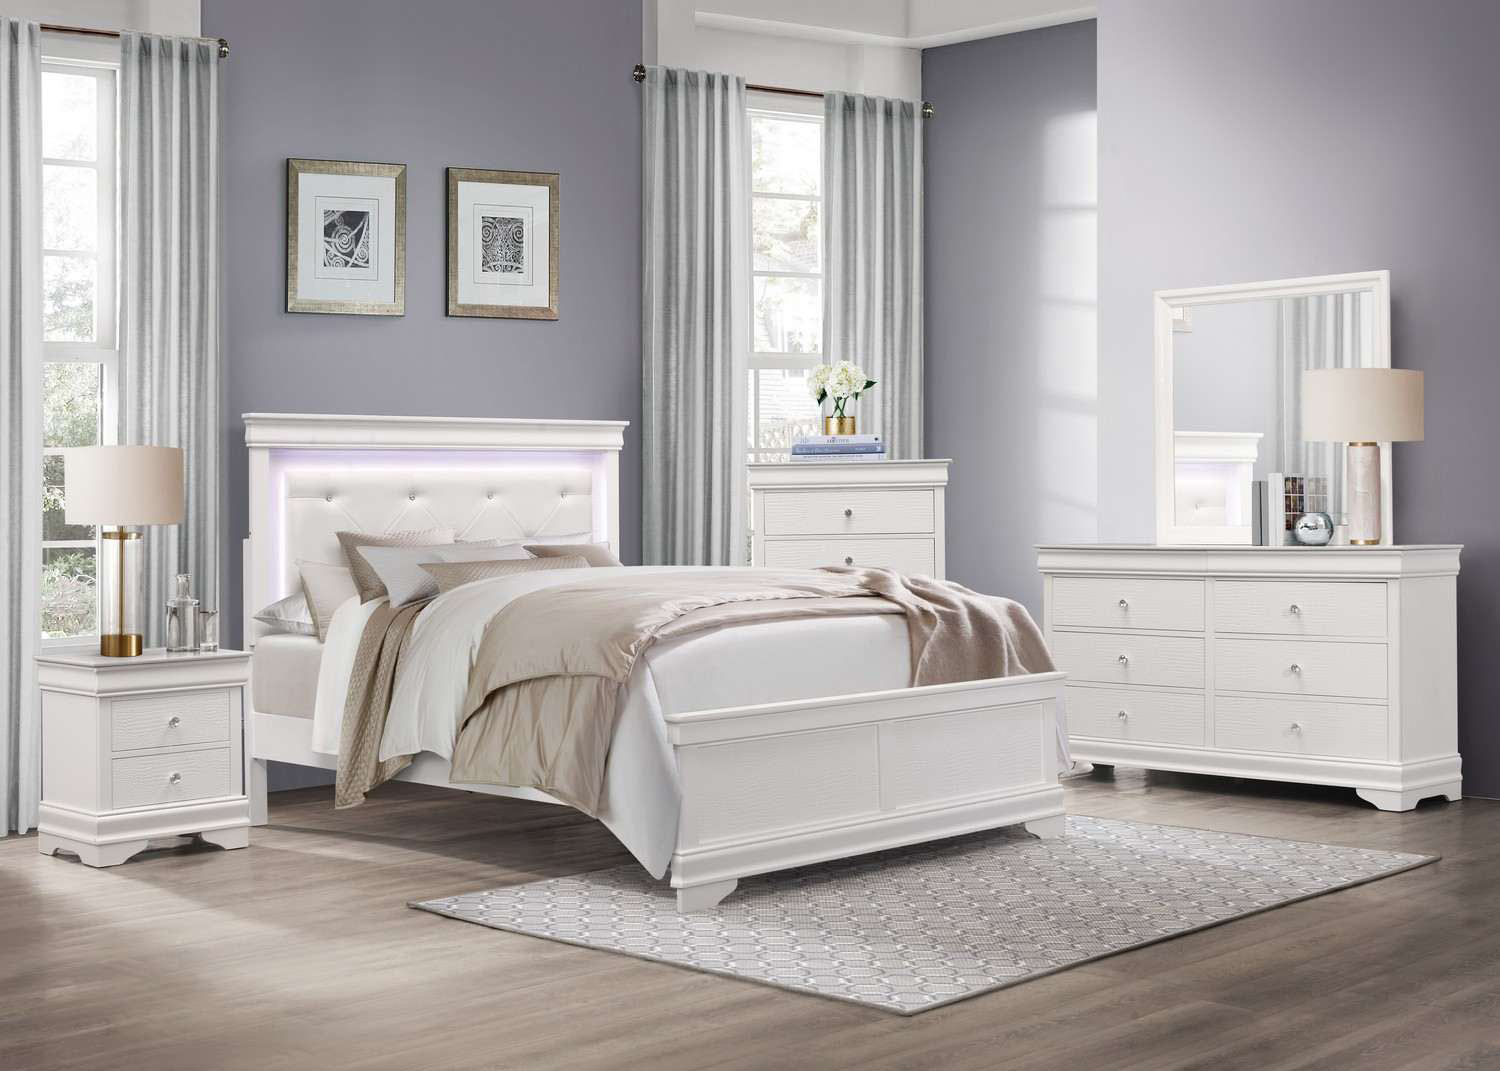 Homelegance Lana Bedroom Set - White